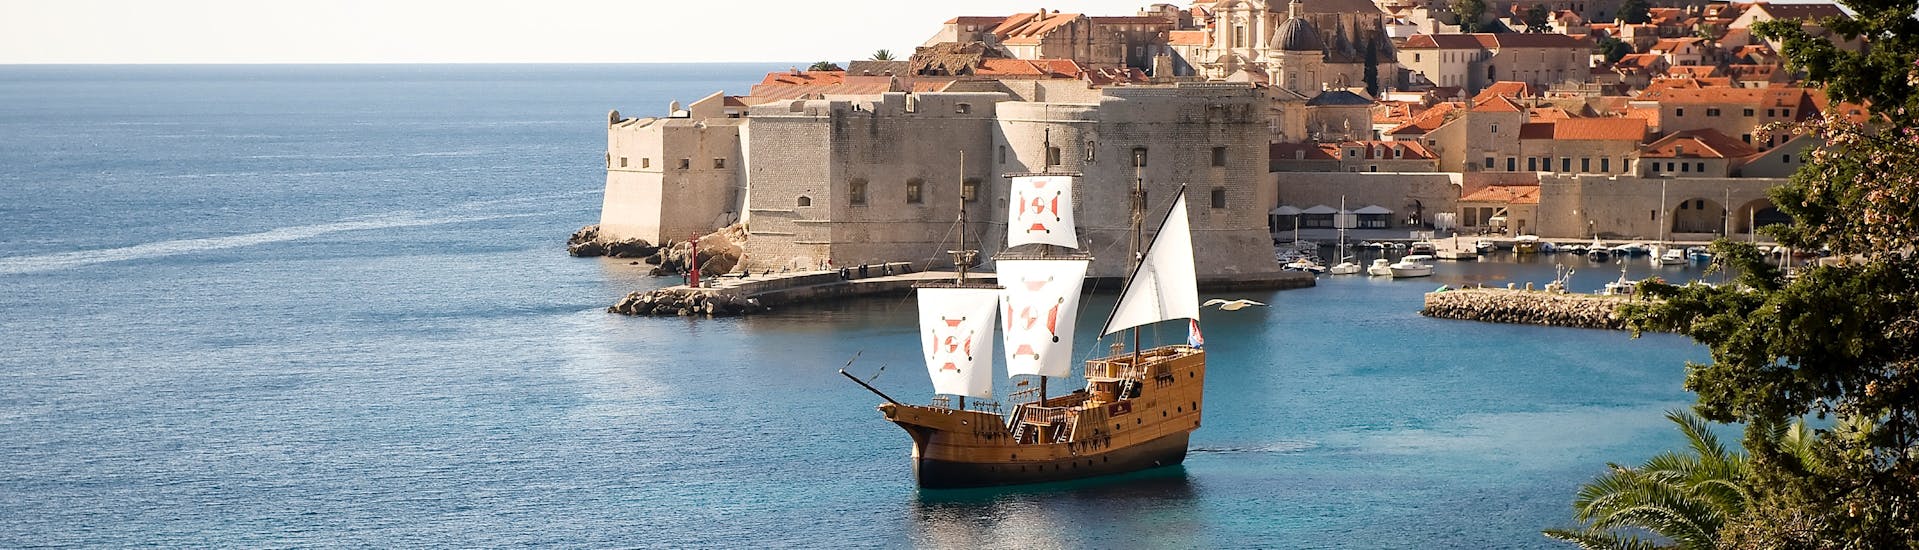 Das traditionelle Karaka-Boot auf dem Wasser vor dem Sonnenuntergang mit Karaka Dubrovnik.